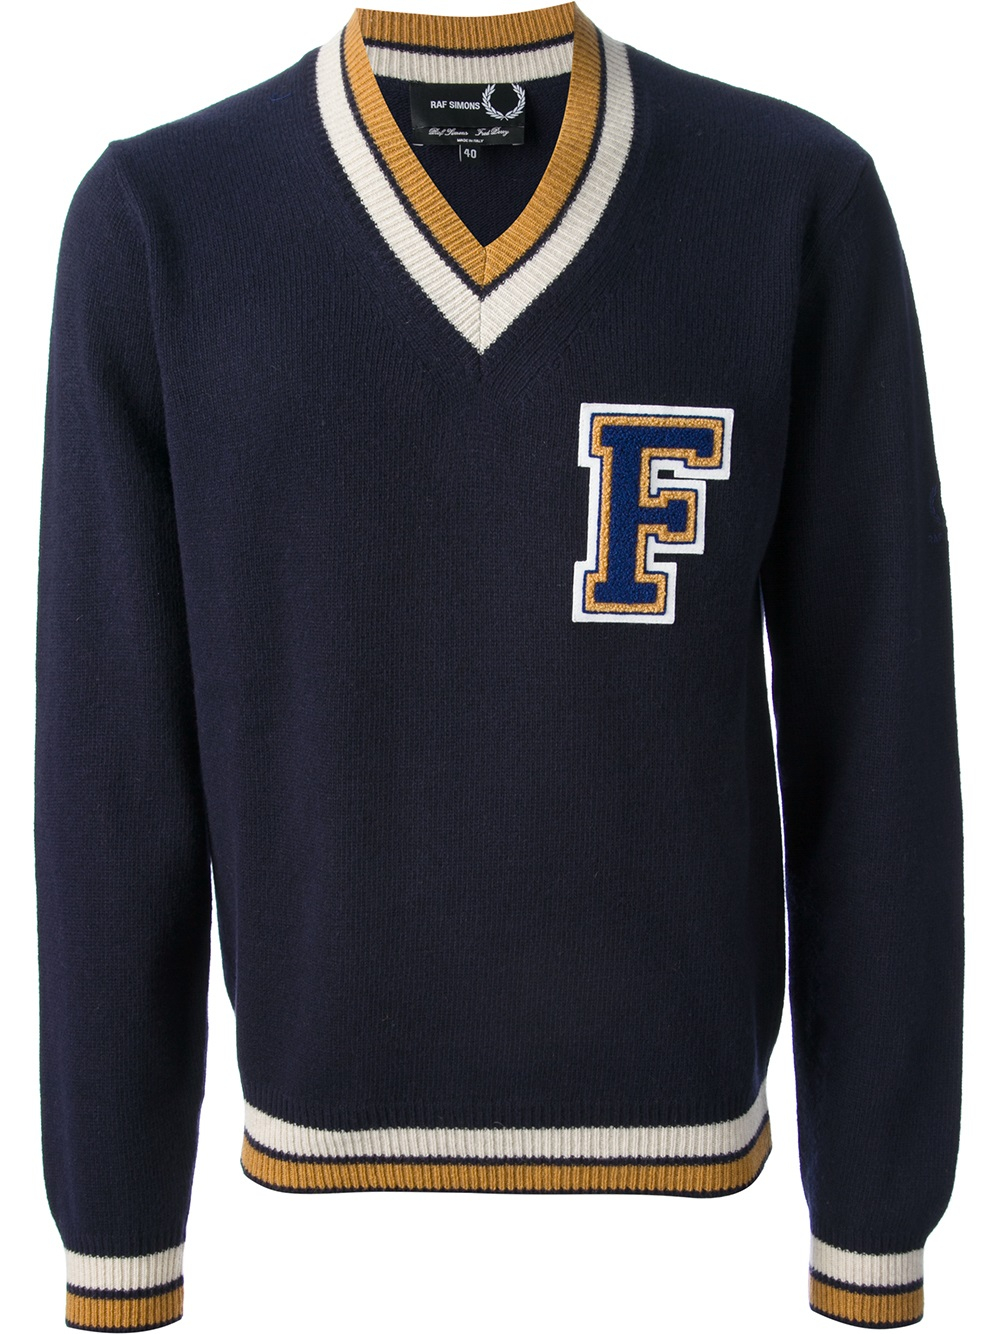 Raf simons Collegiate Sweater in Blue for Men | Lyst